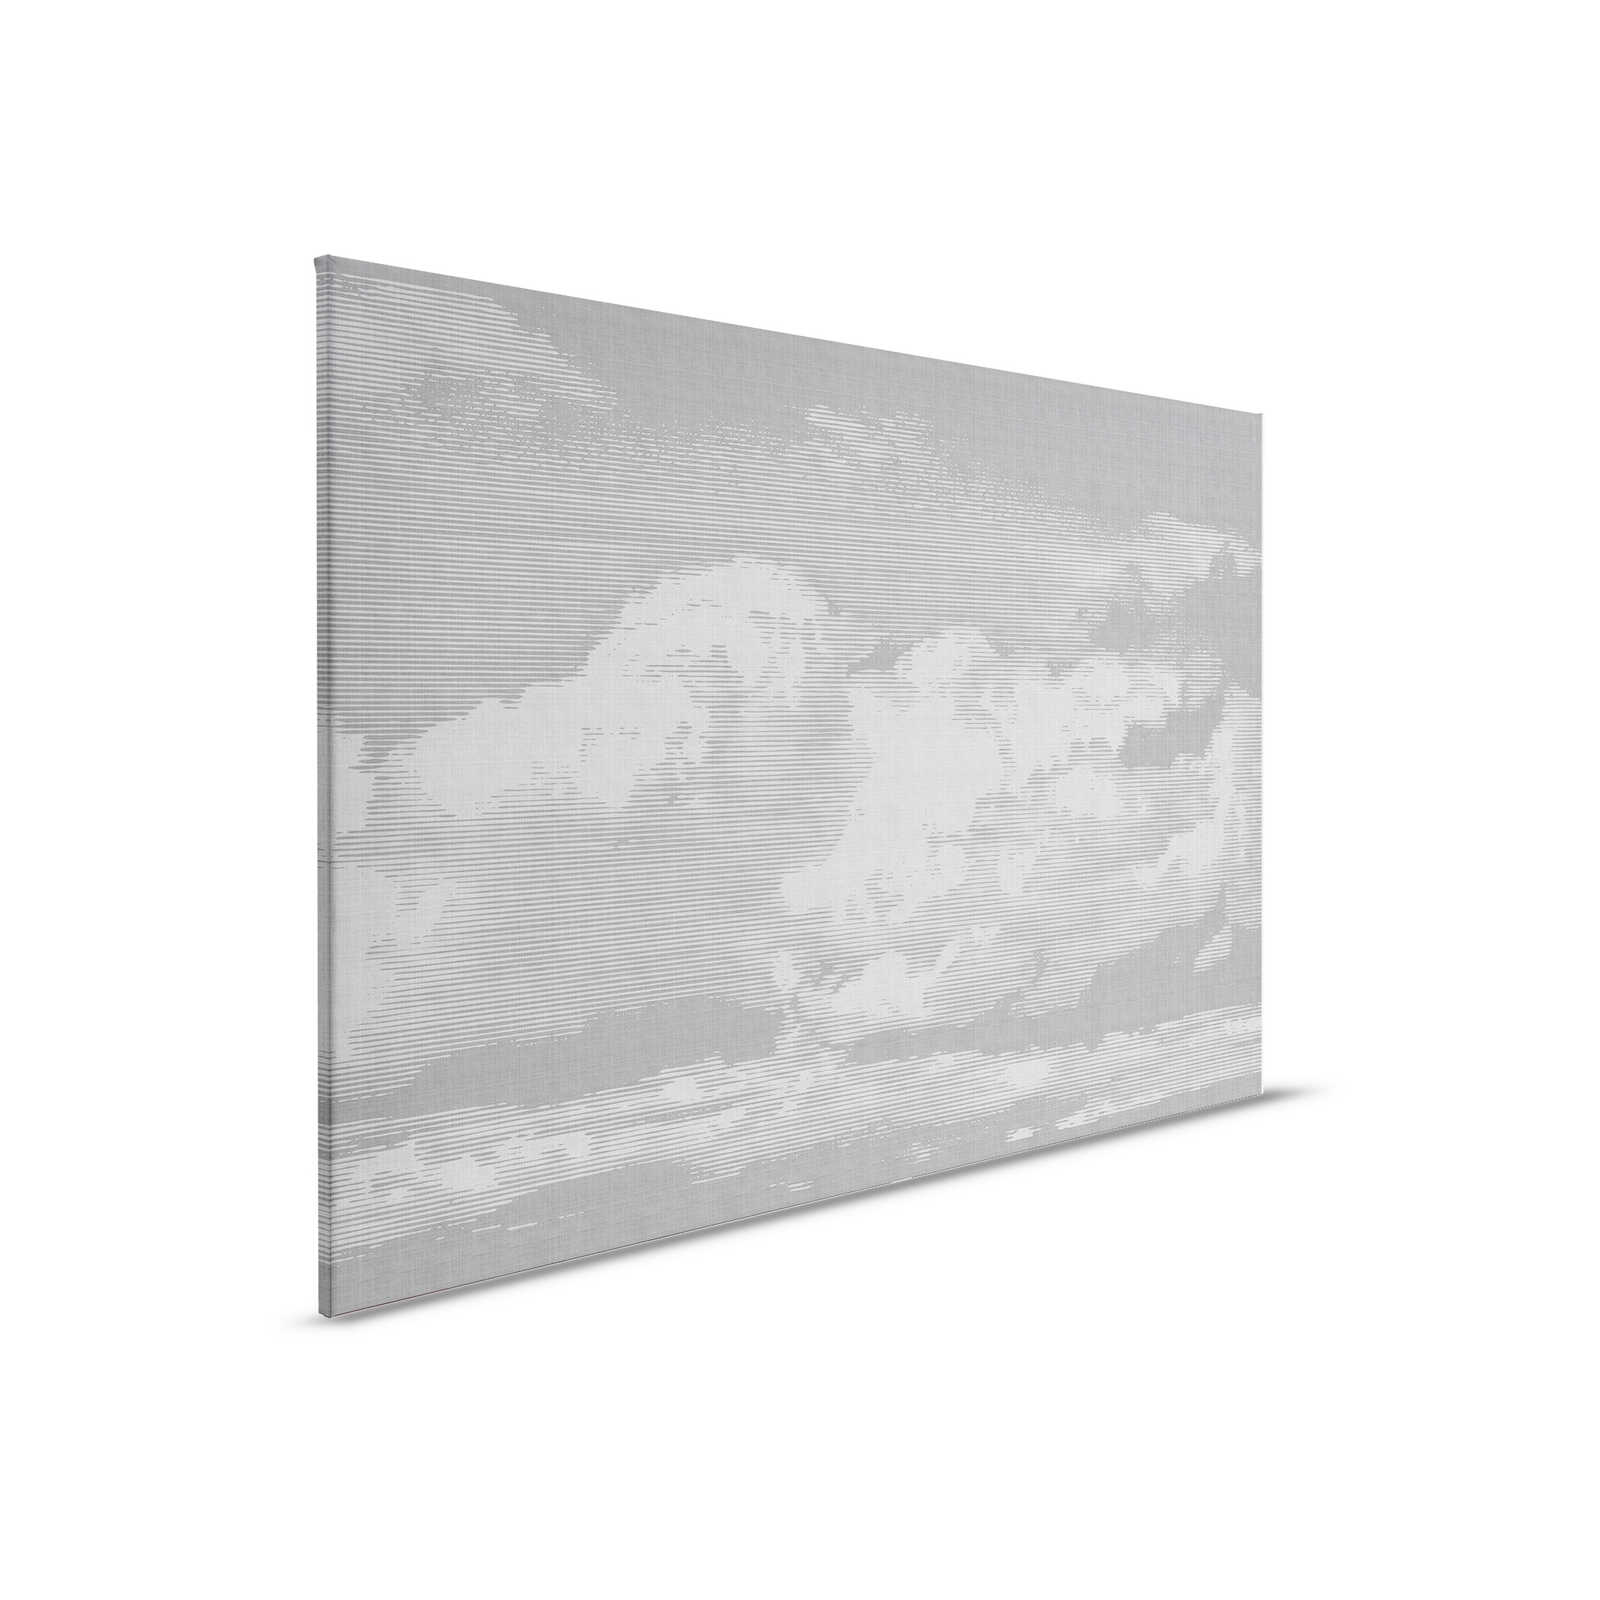 Nuvole 2 - Quadro su tela in lino naturale con motivo di nuvole - 0,90 m x 0,60 m
